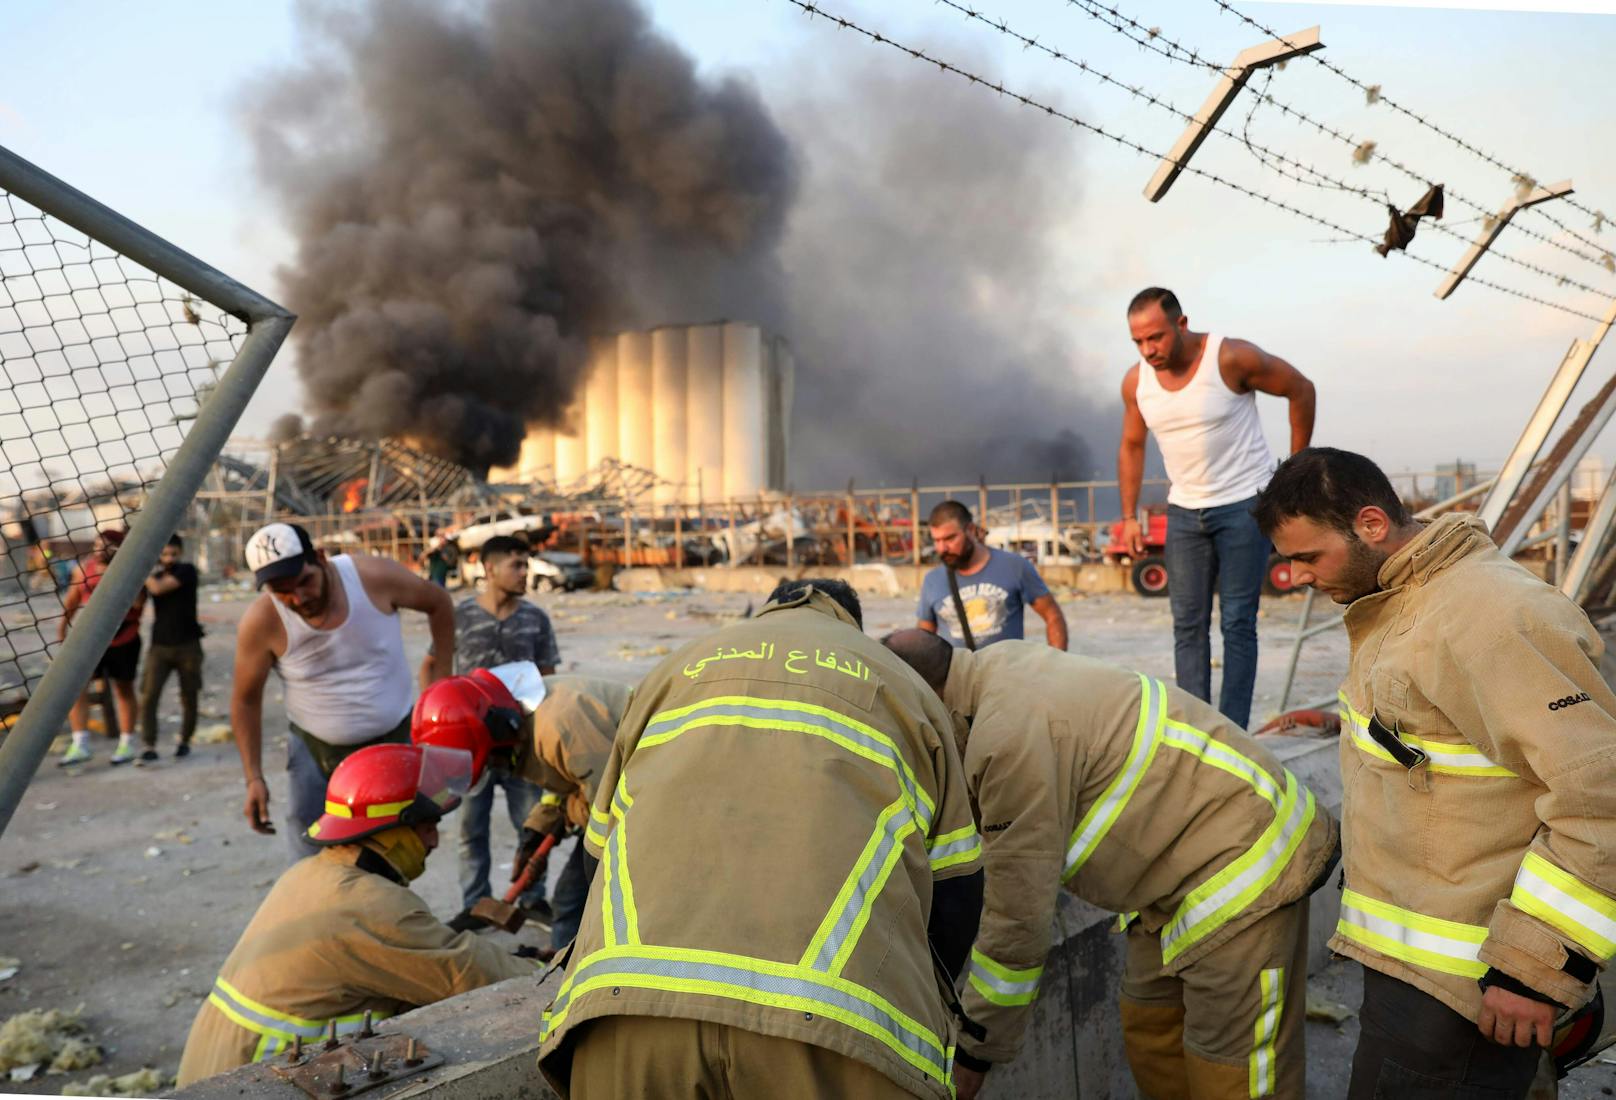 Bilder aus Beirut nach einer riesigen Explosion am Hafen (4. August 2020)